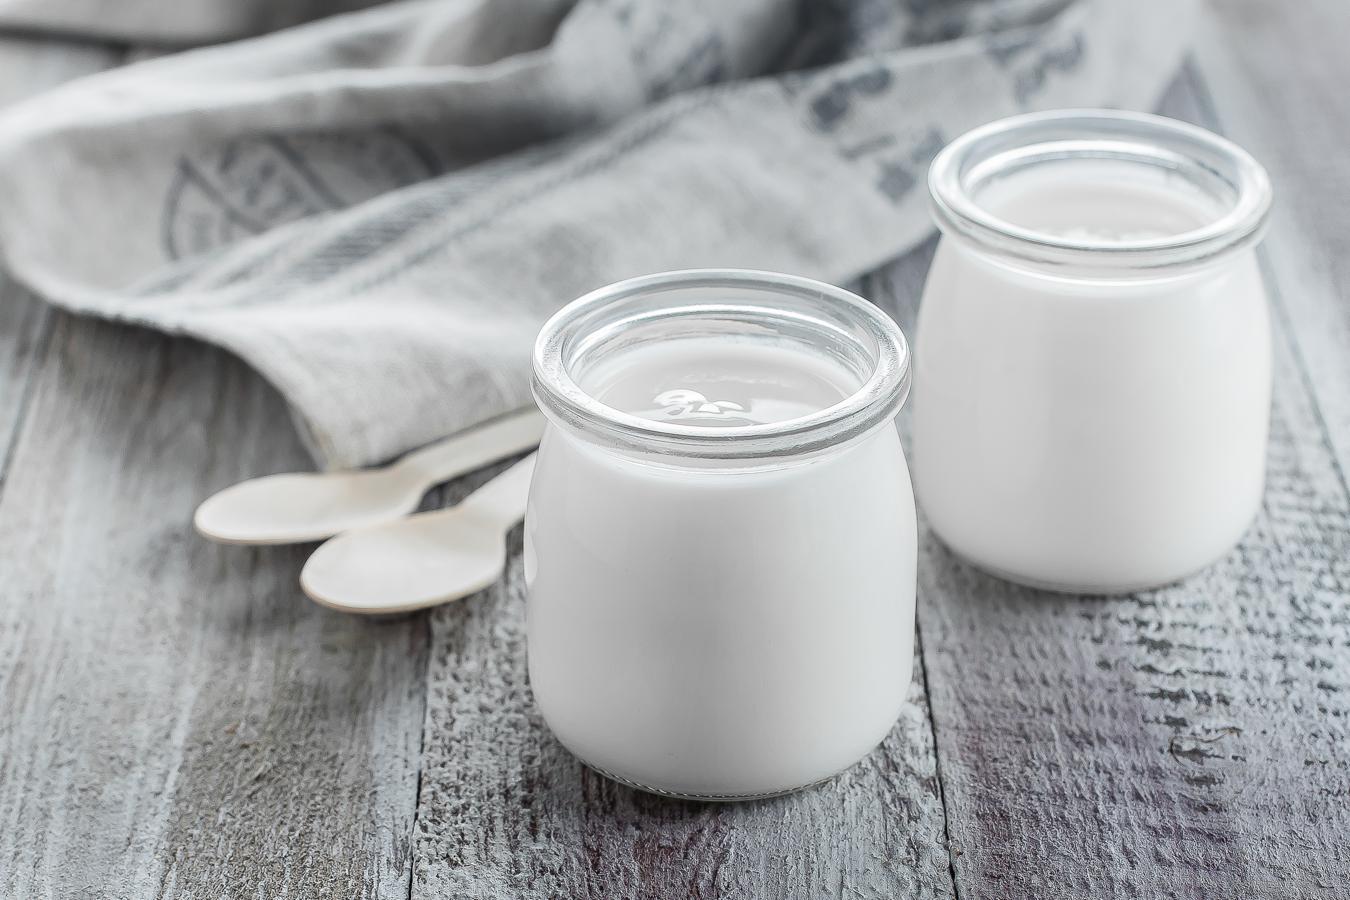 Yogur. El yogur viene a ser el alimento probiótico por excelencia. Una de las ventajas de consumirlo es que posee una proteína más digerible que la leche (con menos lactosa), lo que hace que se absorba mejor en el organismo.